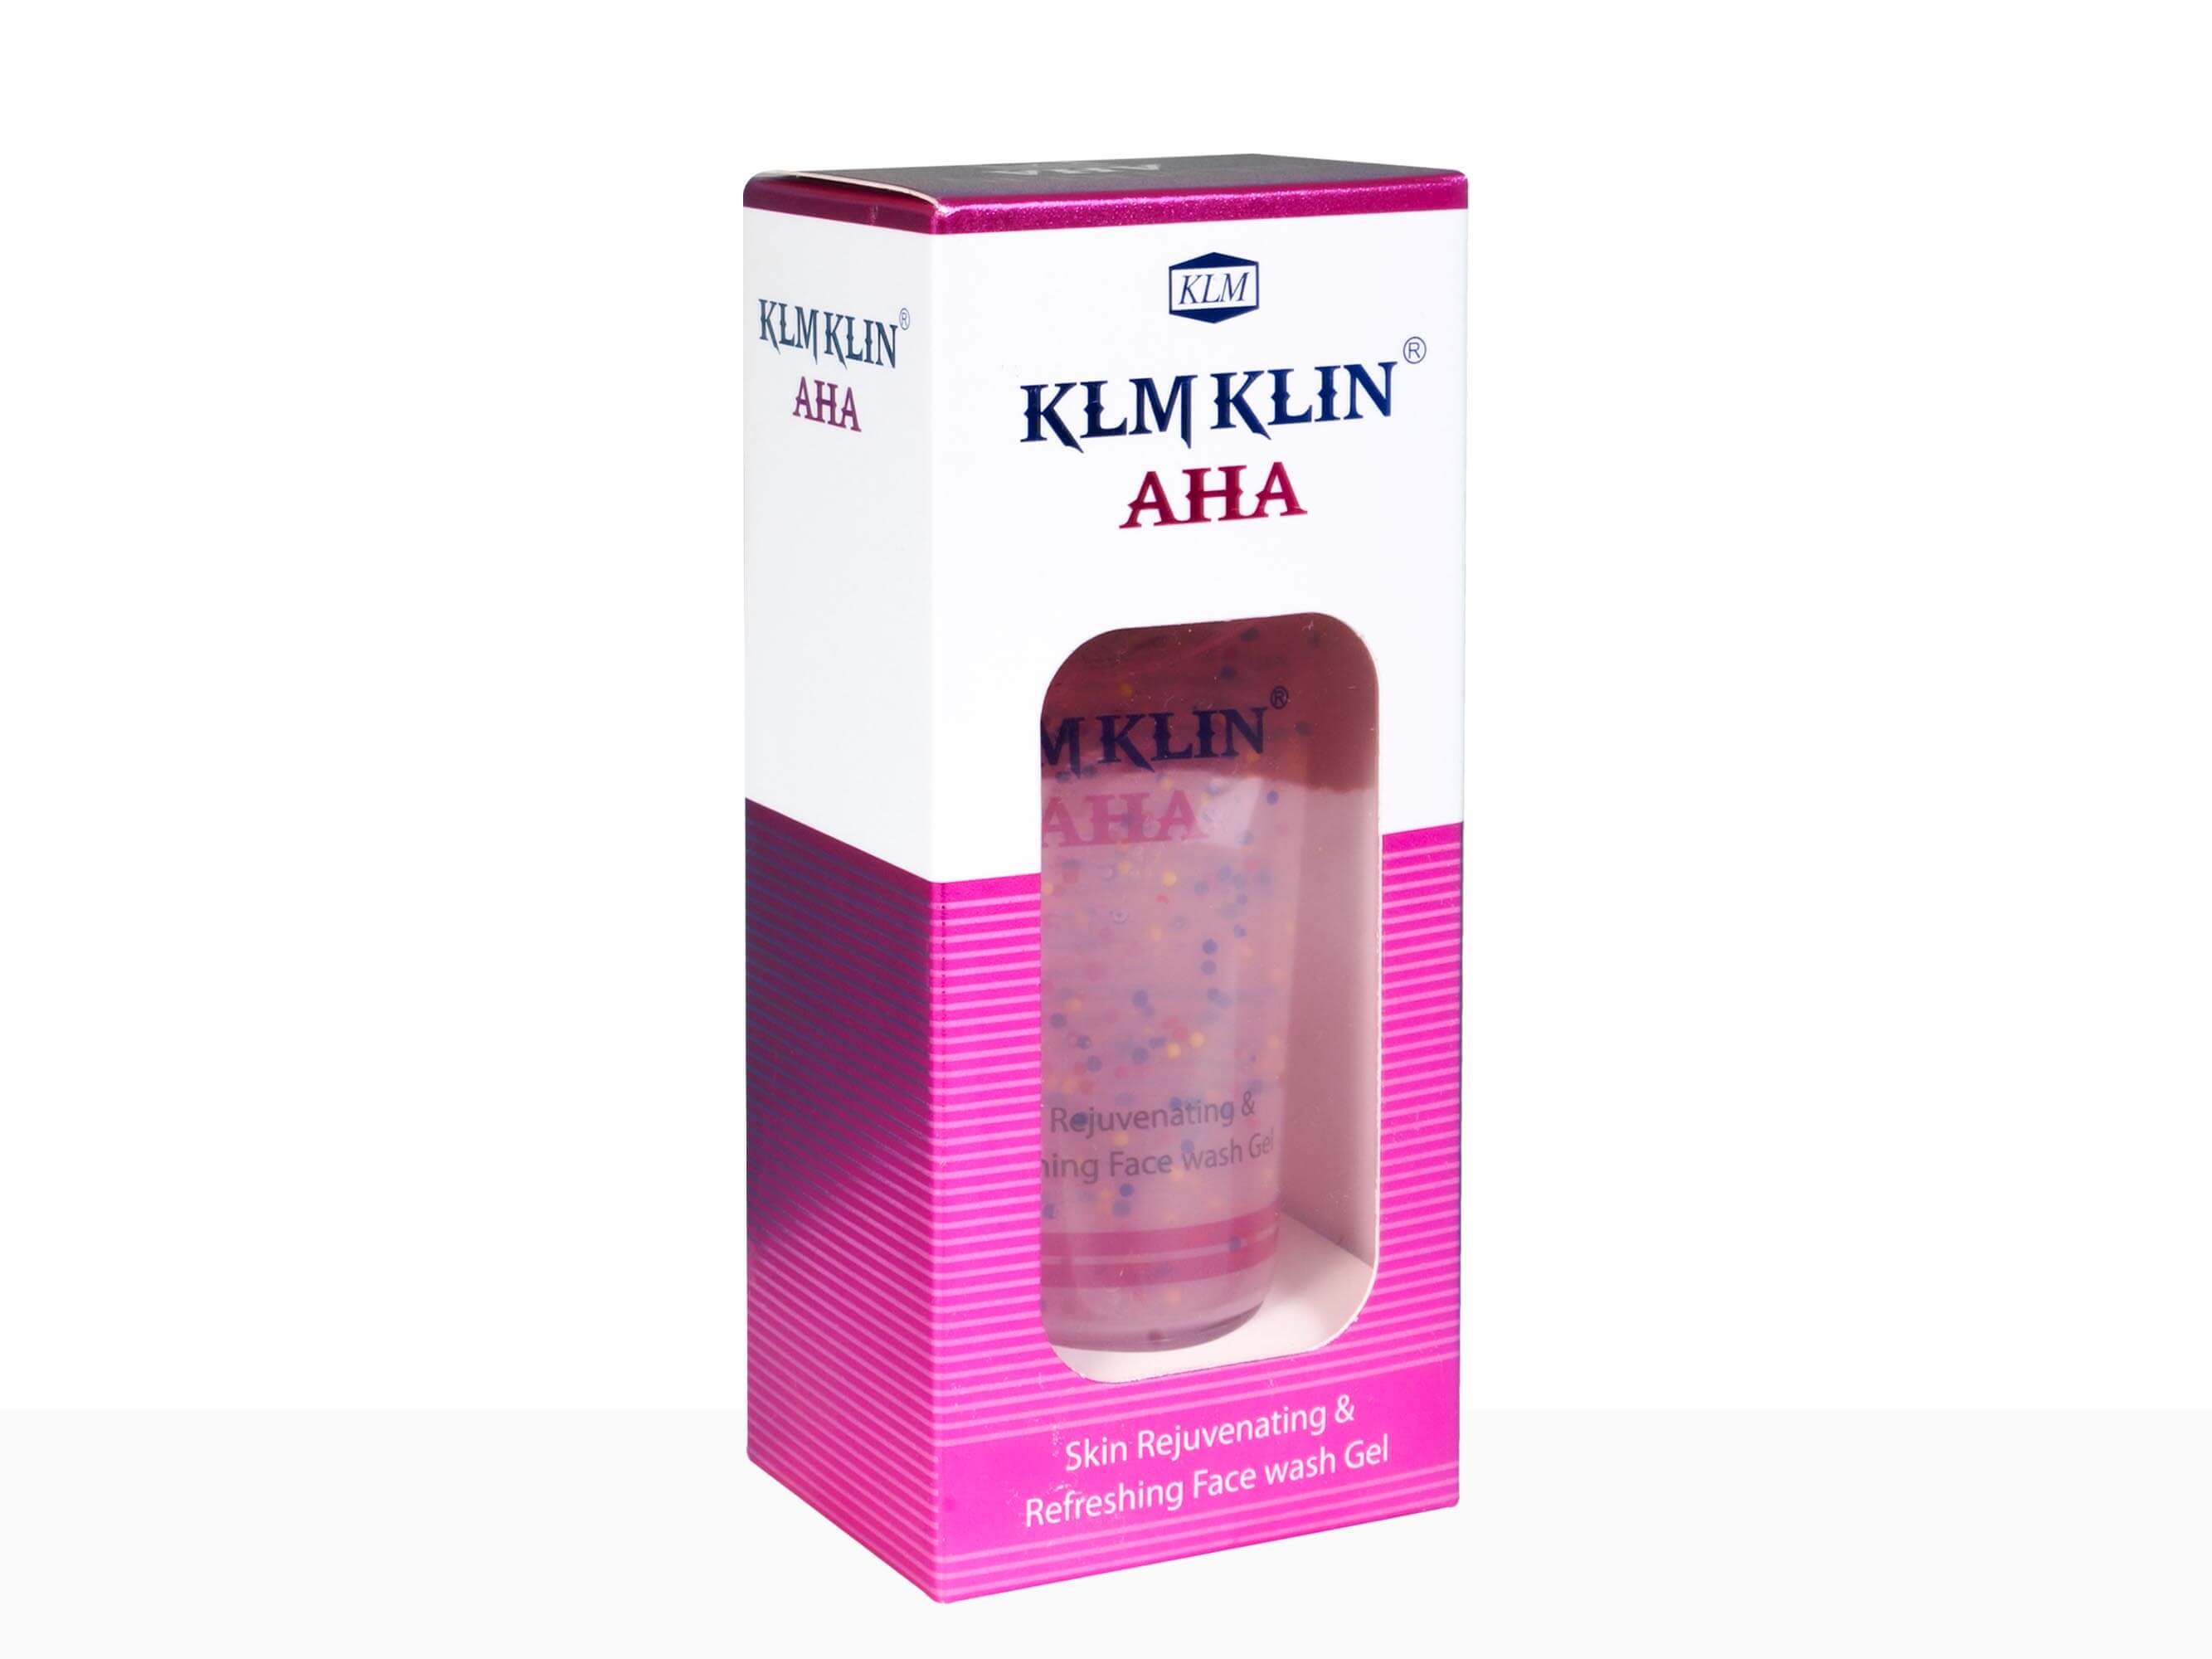 Klm Klin AHA Face Wash Gell - Clinikally